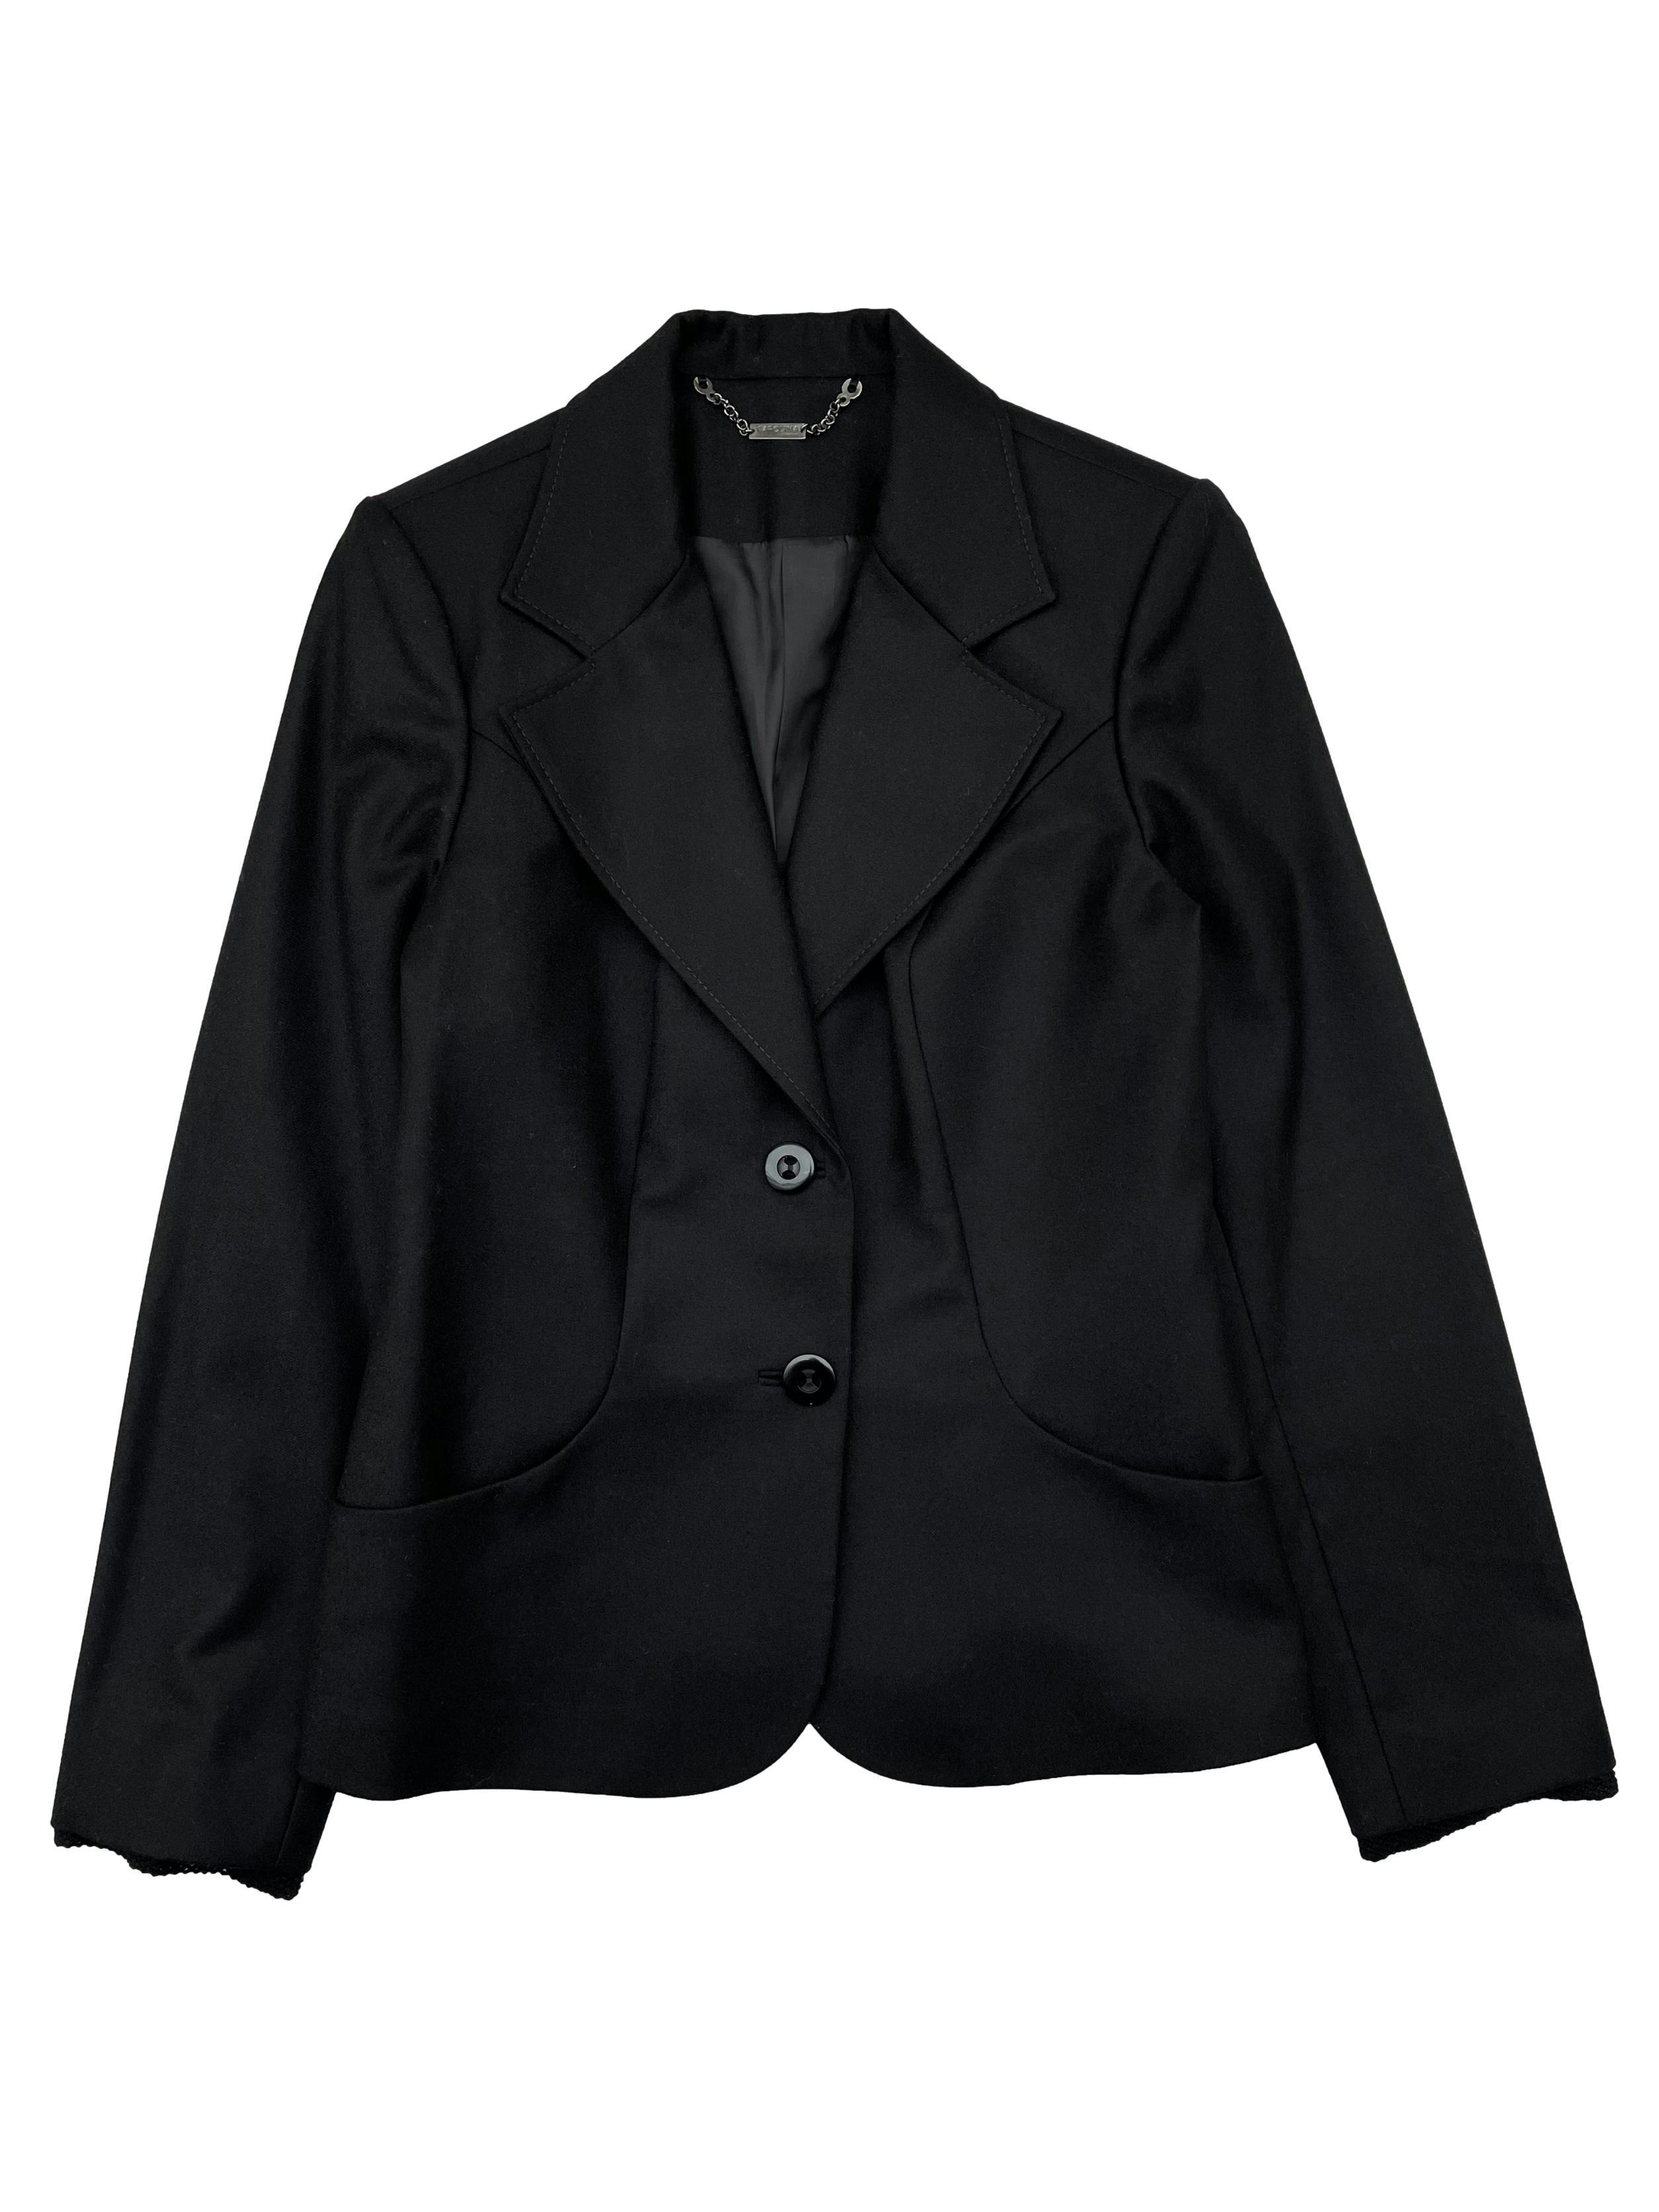 Blazer negro Carolina 100% lana, forrado, con hombreras, pinzas y bolsillos frontales. Precio original S/300. Busto 100cm, Largo 60cm.